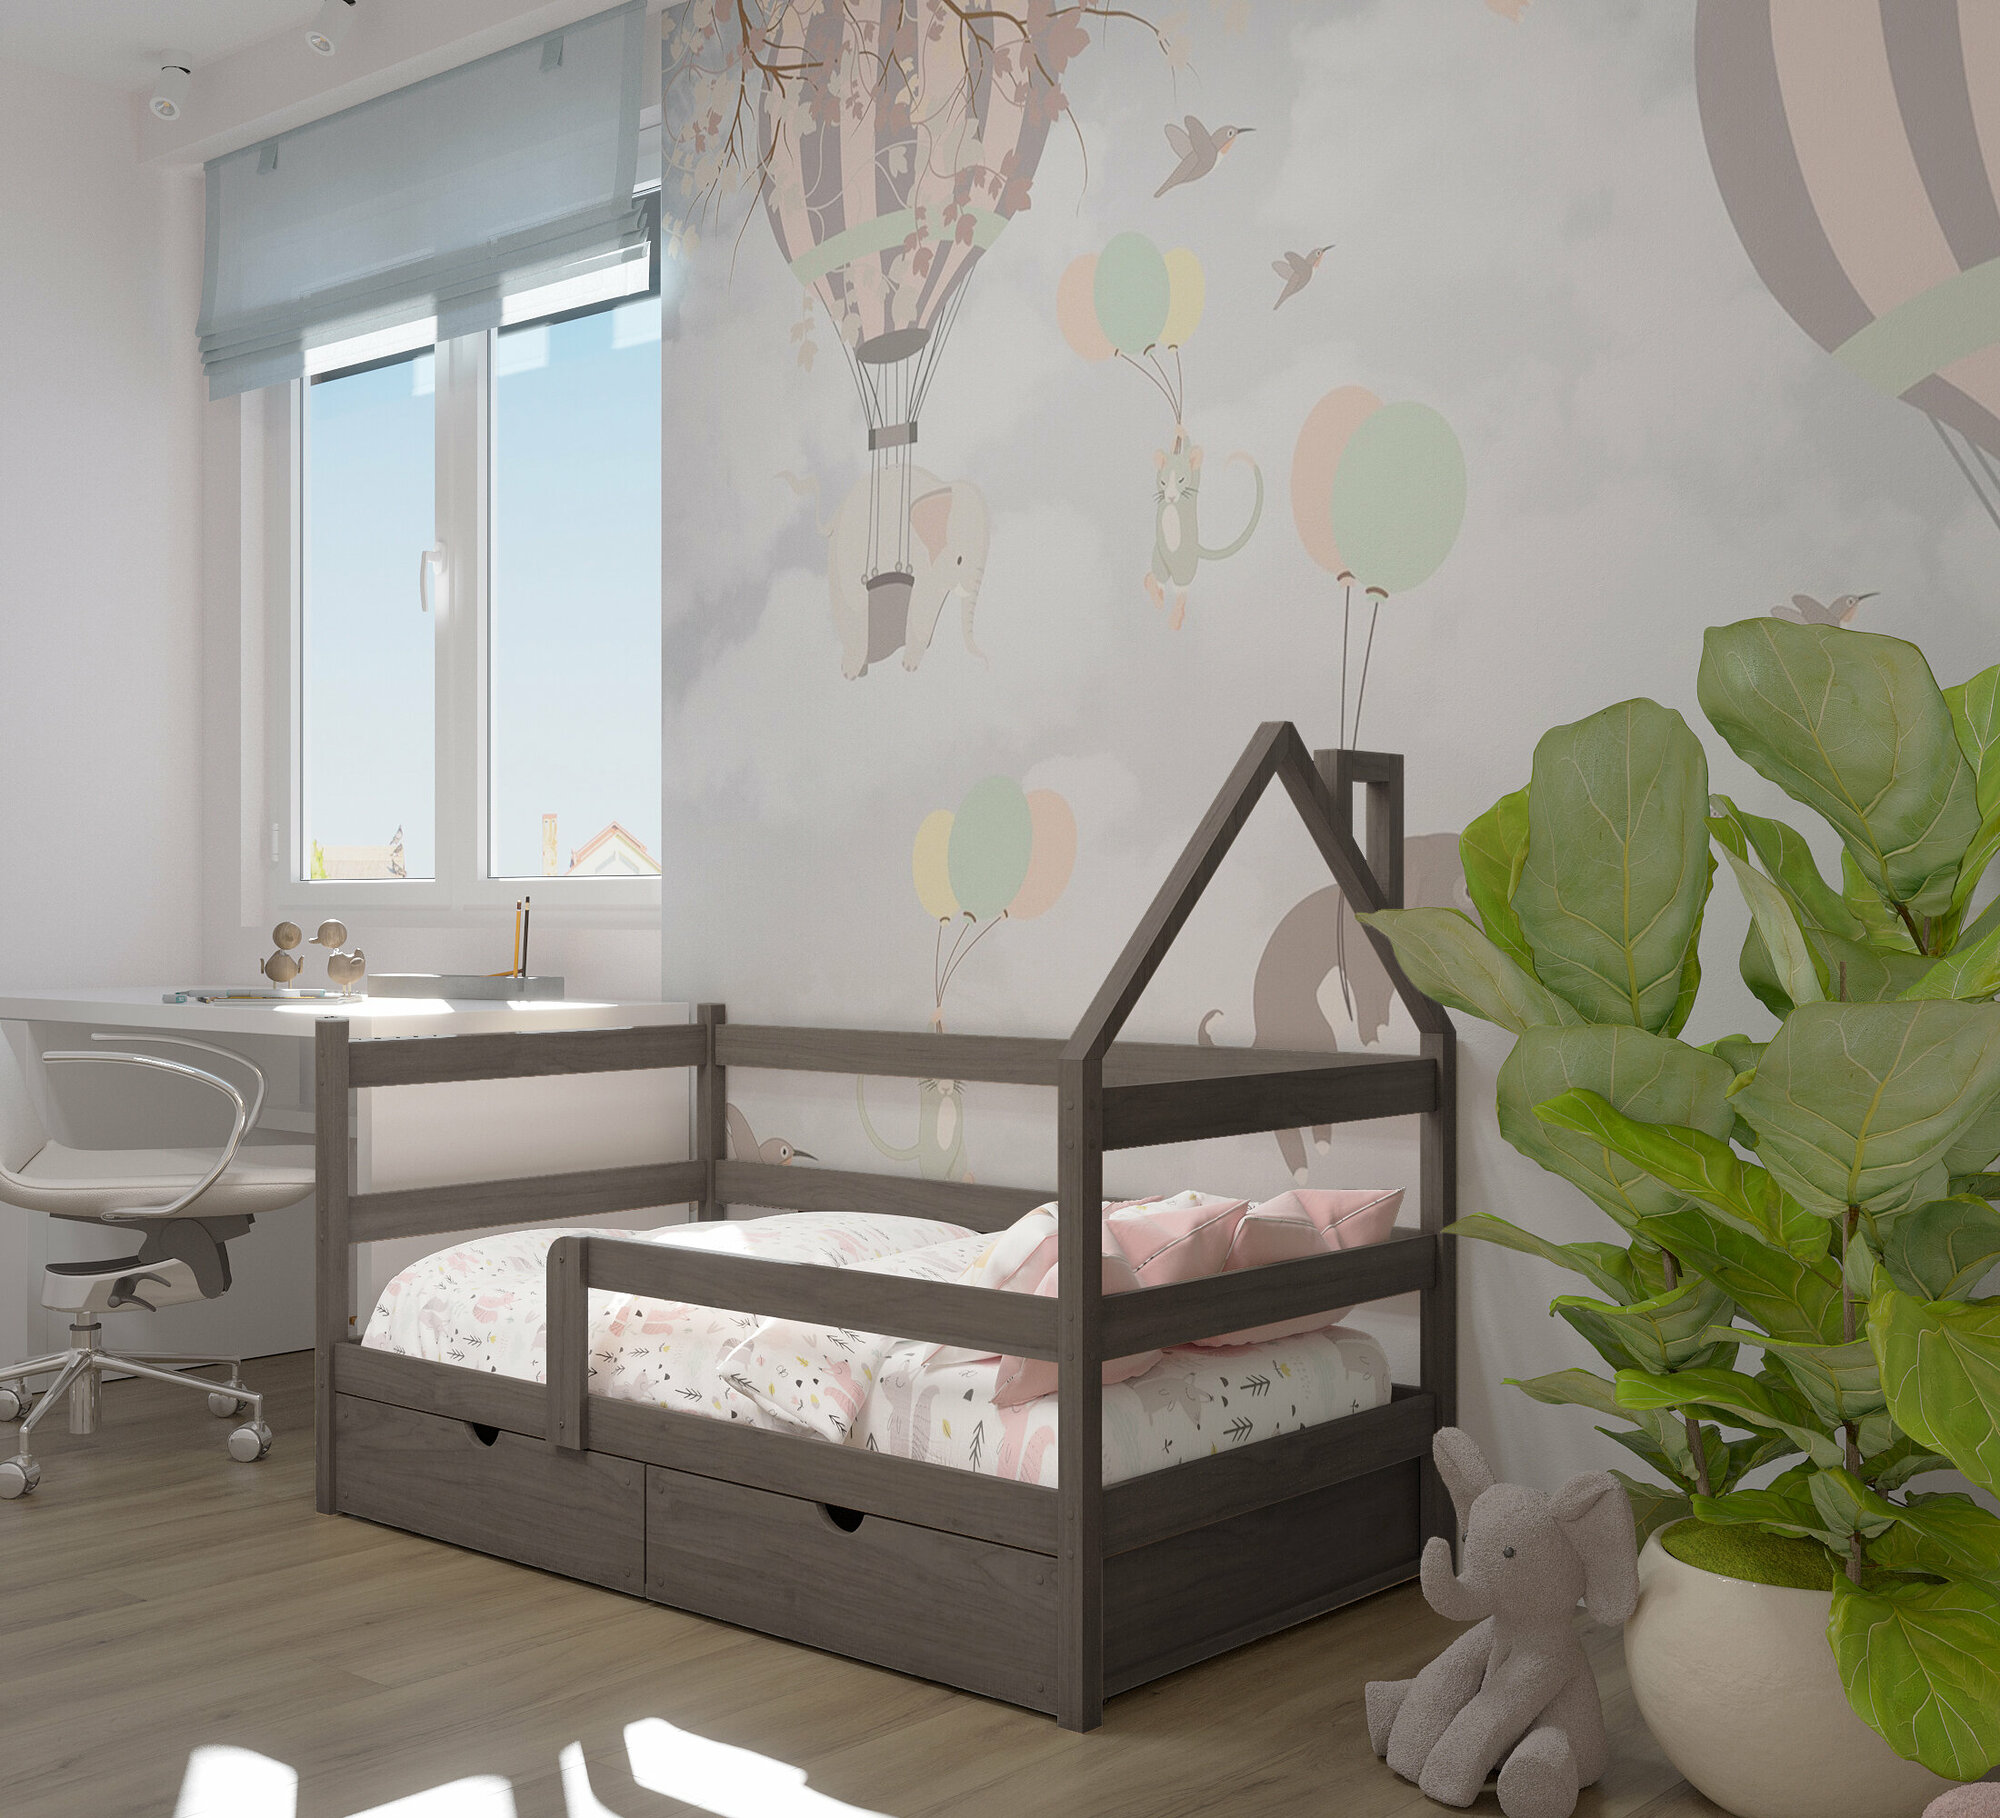 Кровать детская, подростковая "Софа-домик", спальное место 180х90, в комплекте с ящиками и ортопедическим матрасом, масло "Асфальт", из массива